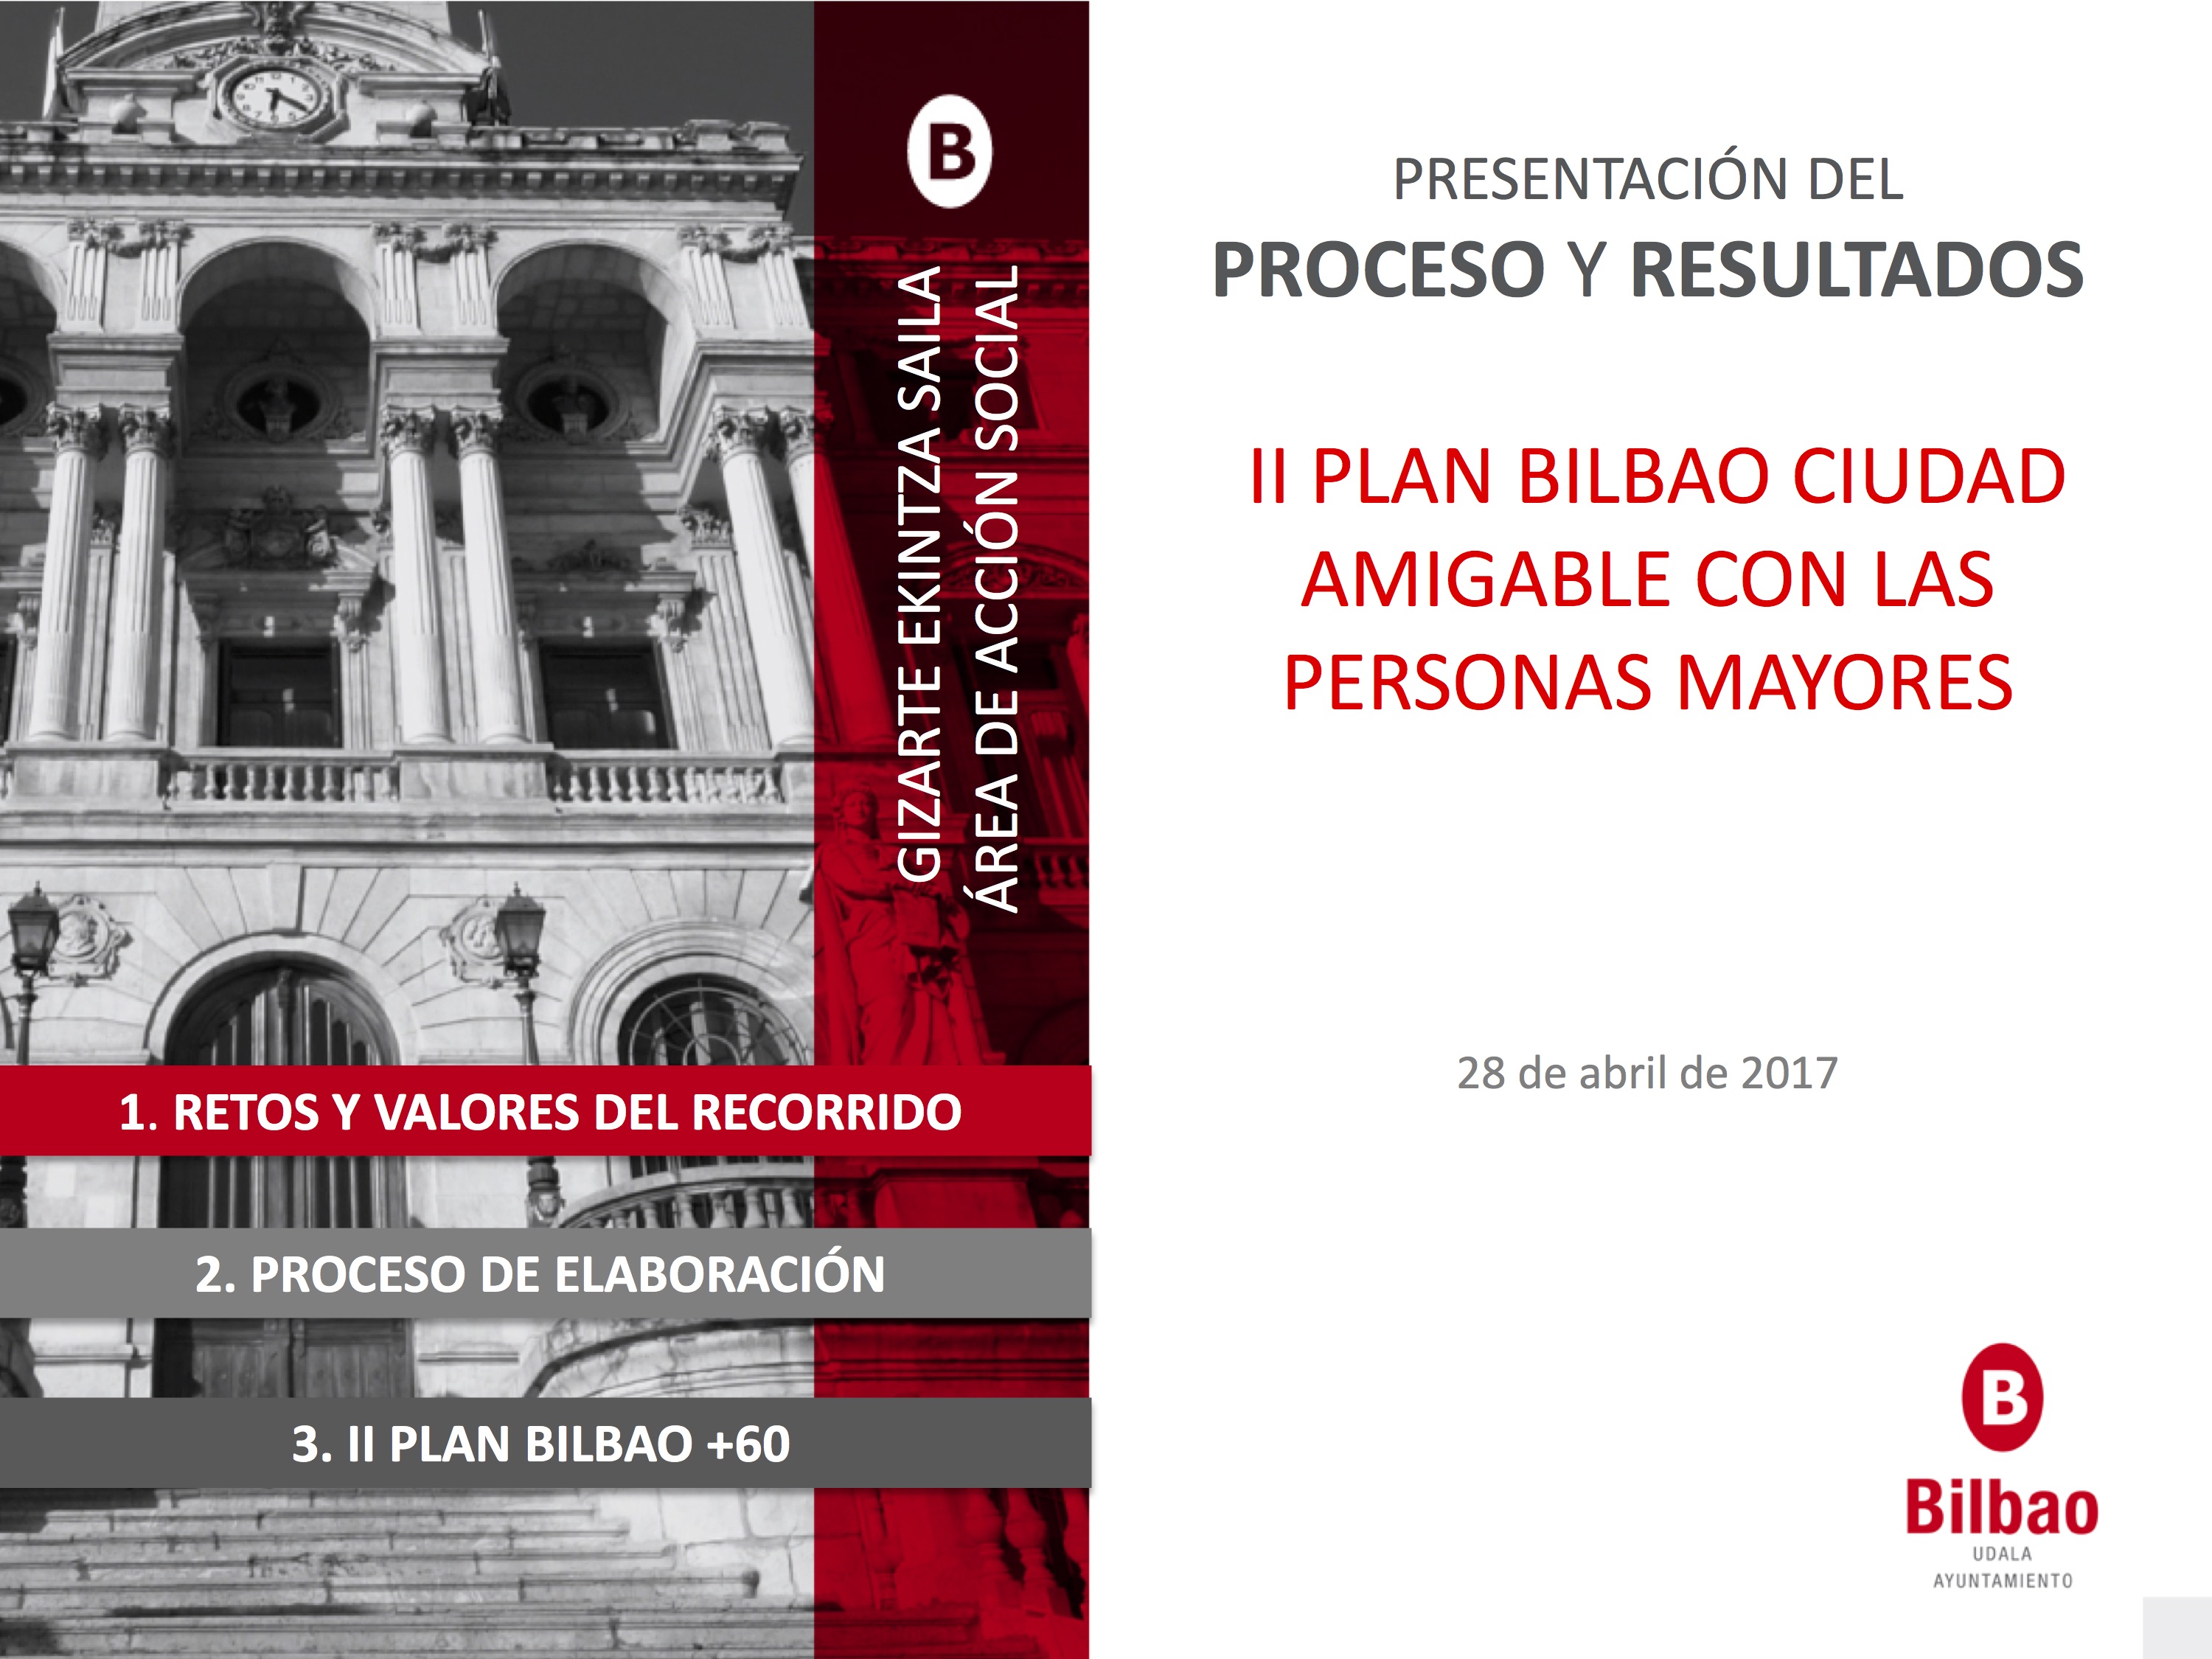 El Ayto presenta el II PLAN “Bilbao Ciudad Amigable con las Personas Mayores” con 244 actuaciones